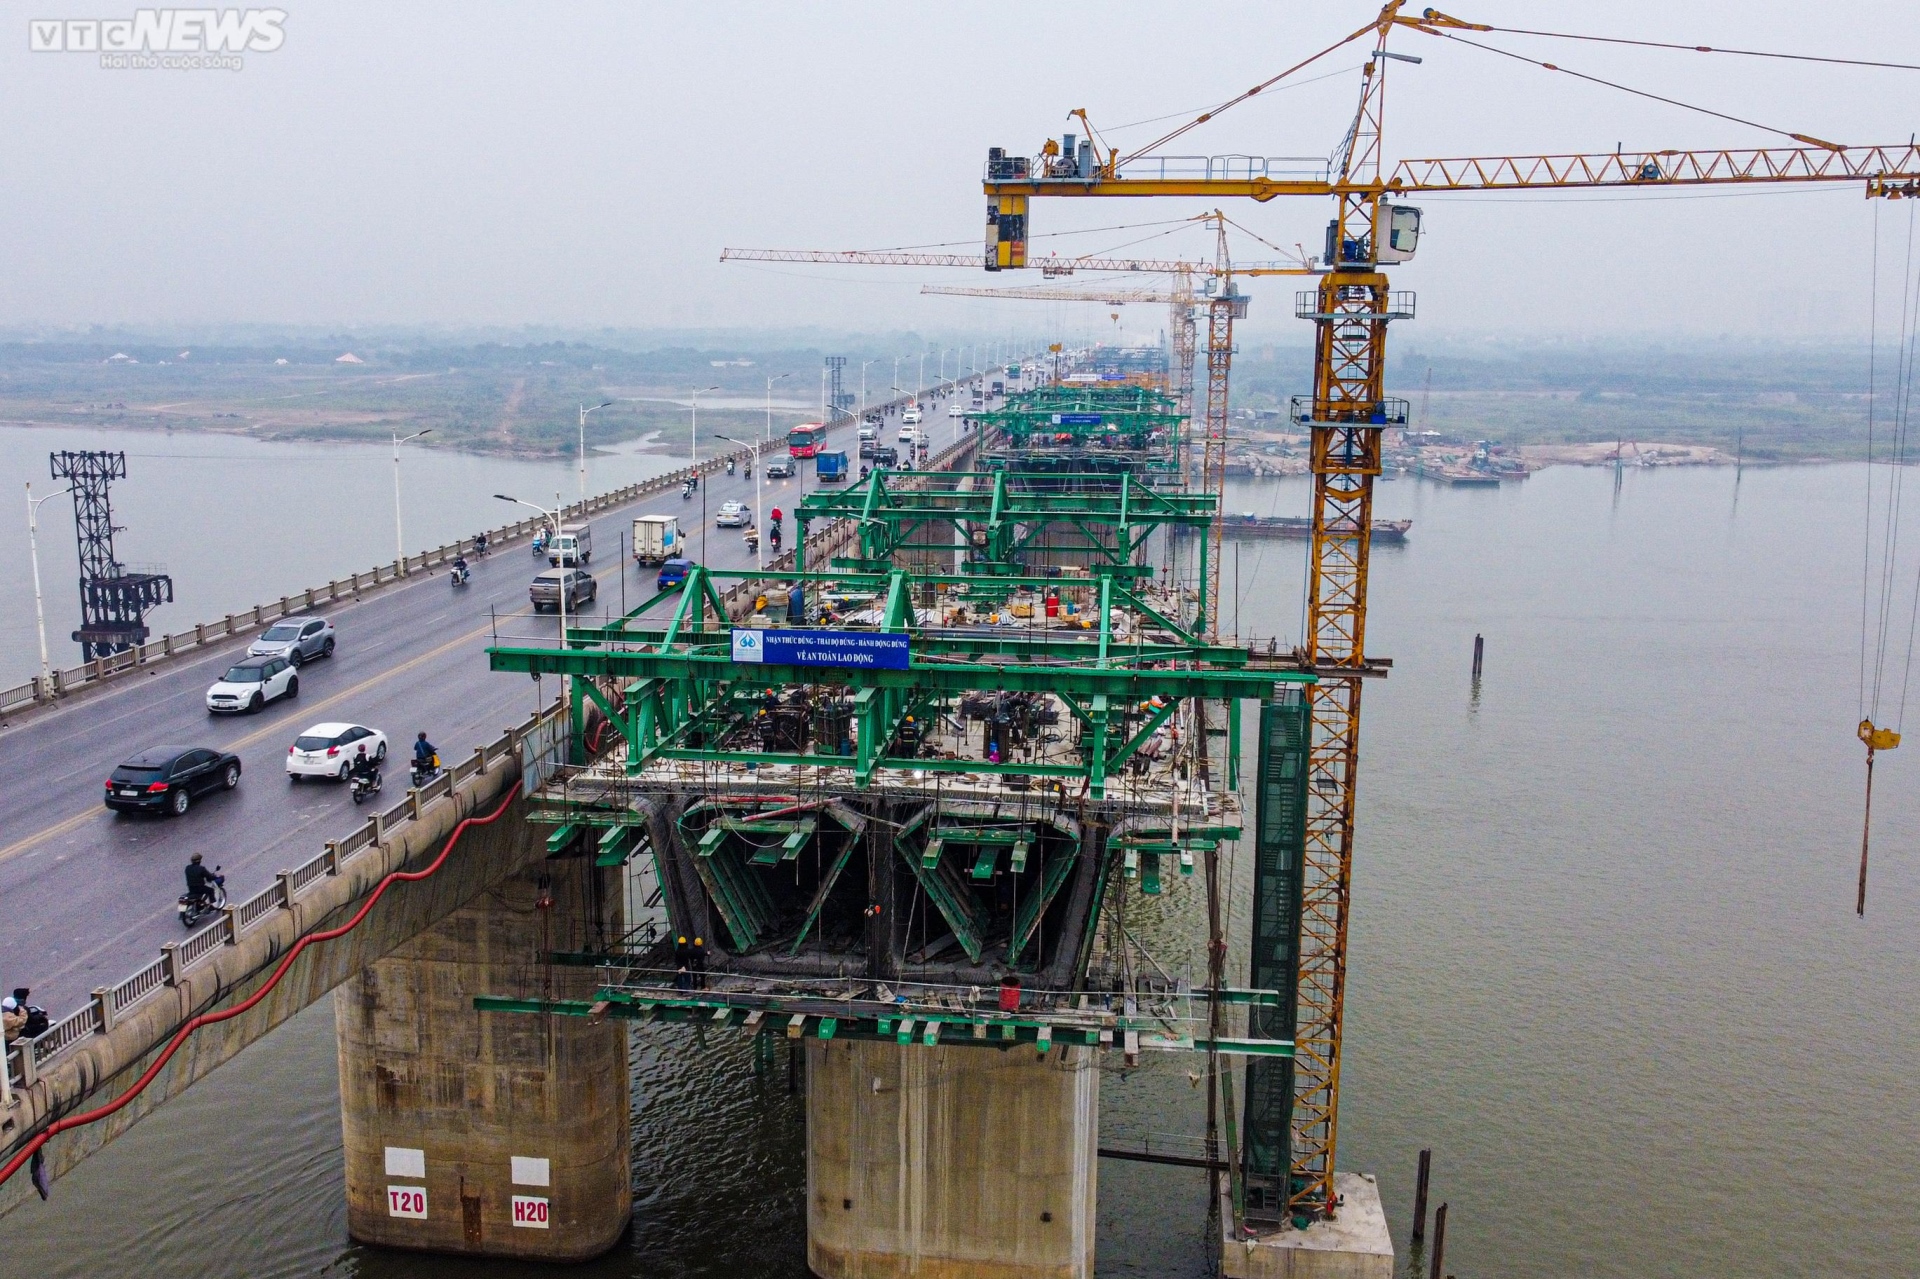 Toàn cảnh dự án cầu Vĩnh Tuy sắp hoàn thành nhìn từ trên cao - Ảnh 2.